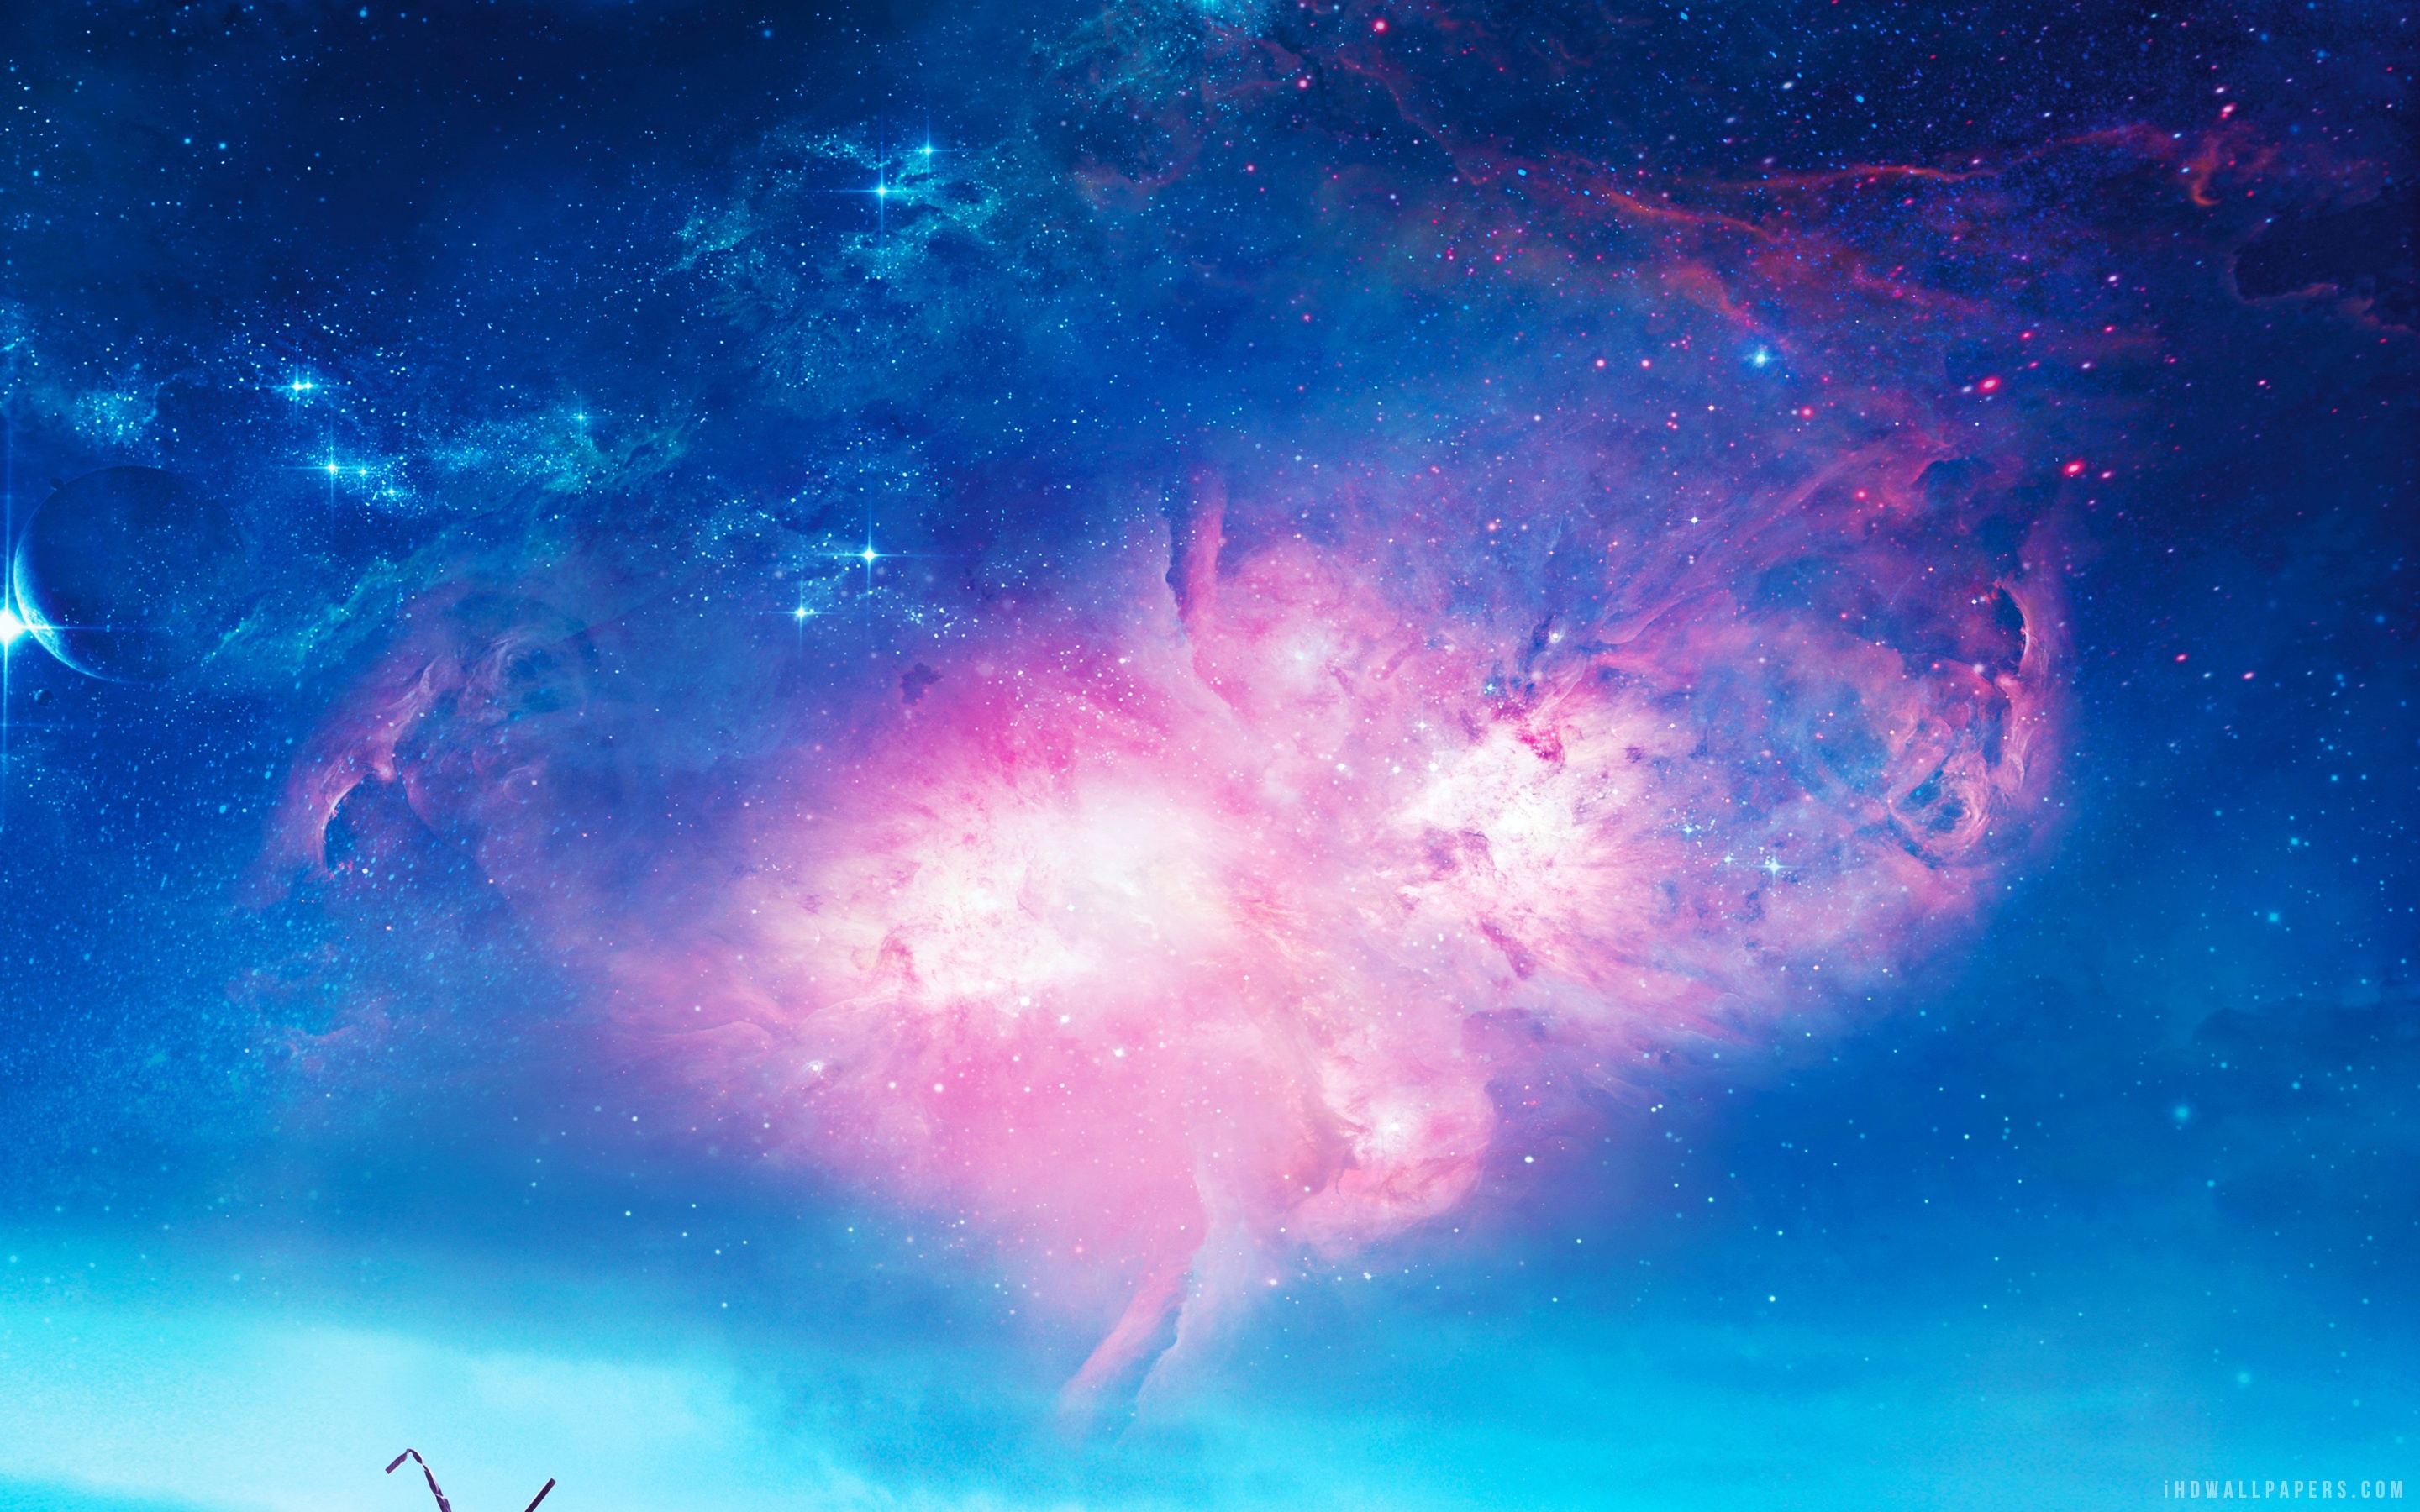 Hình nền Guardians of the Galaxy không gian mang lại cho bạn cảm giác như đang lang thang giữa vũ trụ rộng lớn. Với hình nền đầy màu sắc và rực rỡ này, bạn sẽ chắc chắn sẽ được trải nghiệm những điều kỳ diệu của vũ trụ!